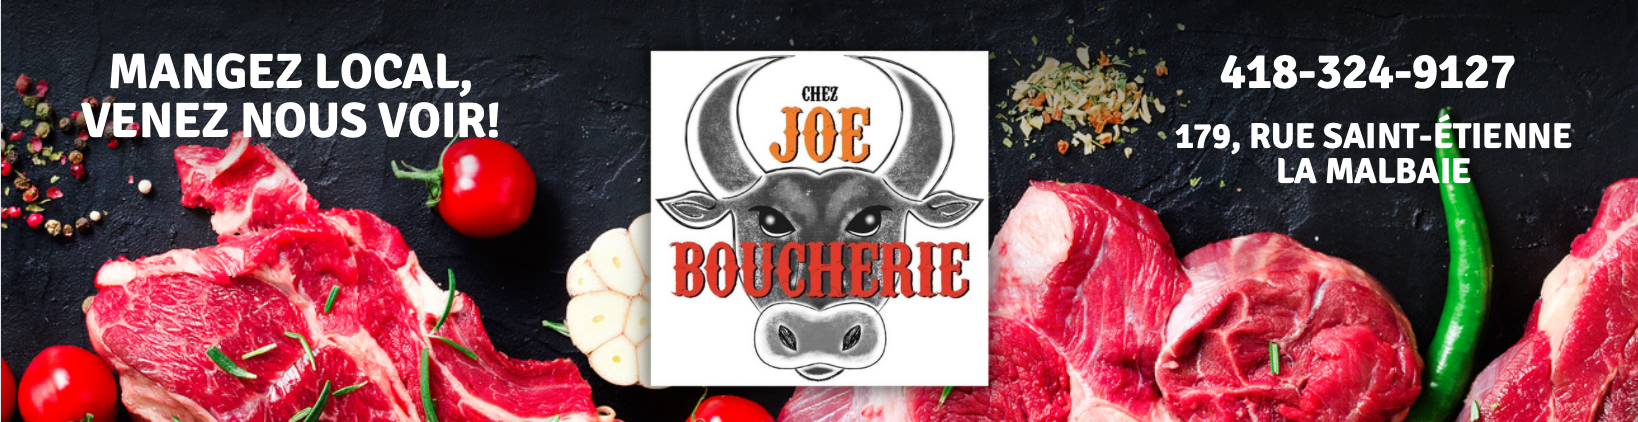 Janvier: Boucherie Joe regulier